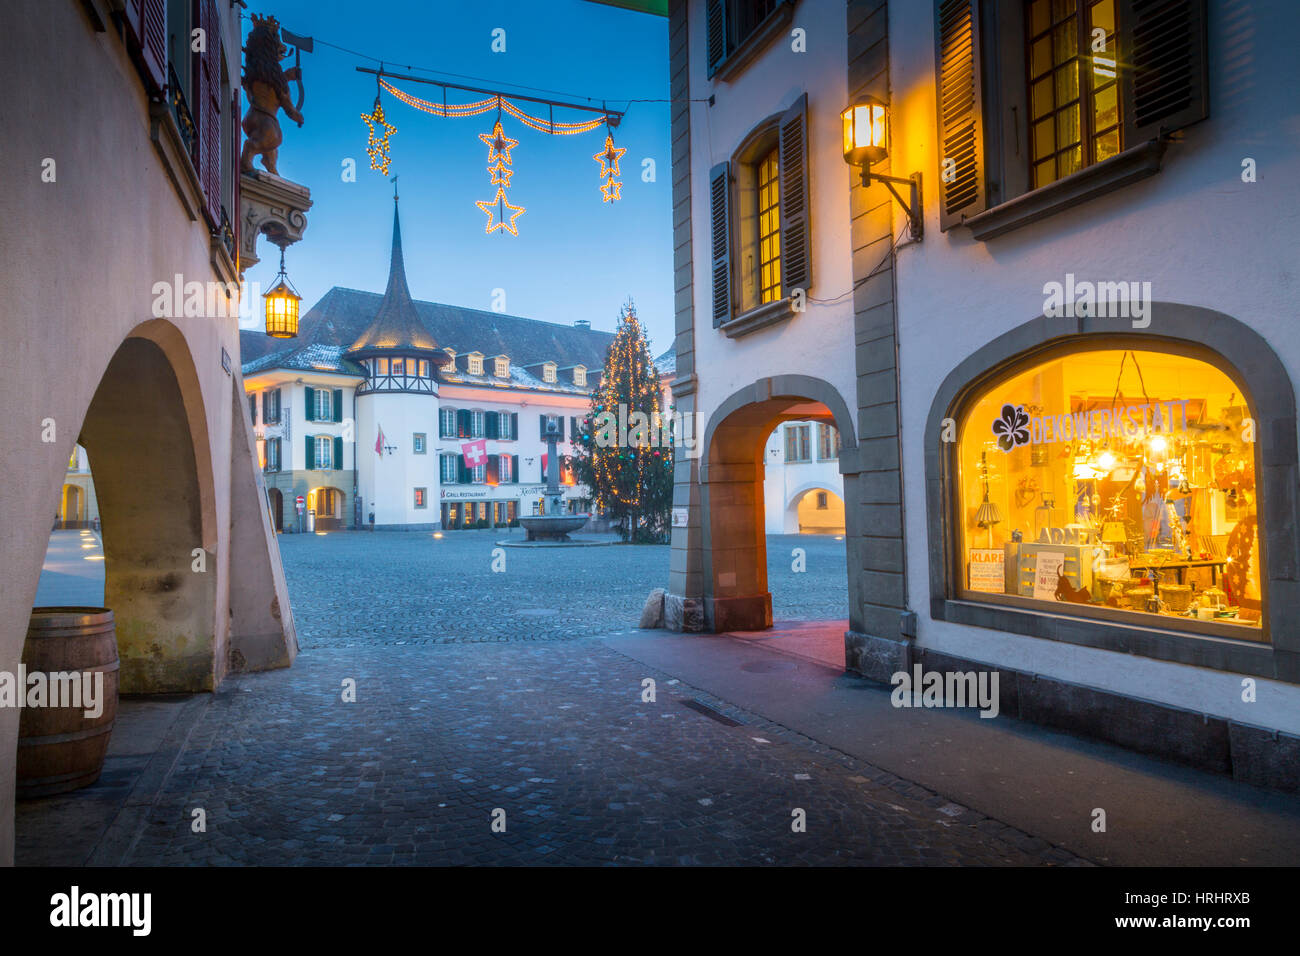 Weihnachtsbaum in Rathausplatz, Thun, Jungfrau Region, Berner Oberland, Schweizer Alpen, Schweiz Stockfoto